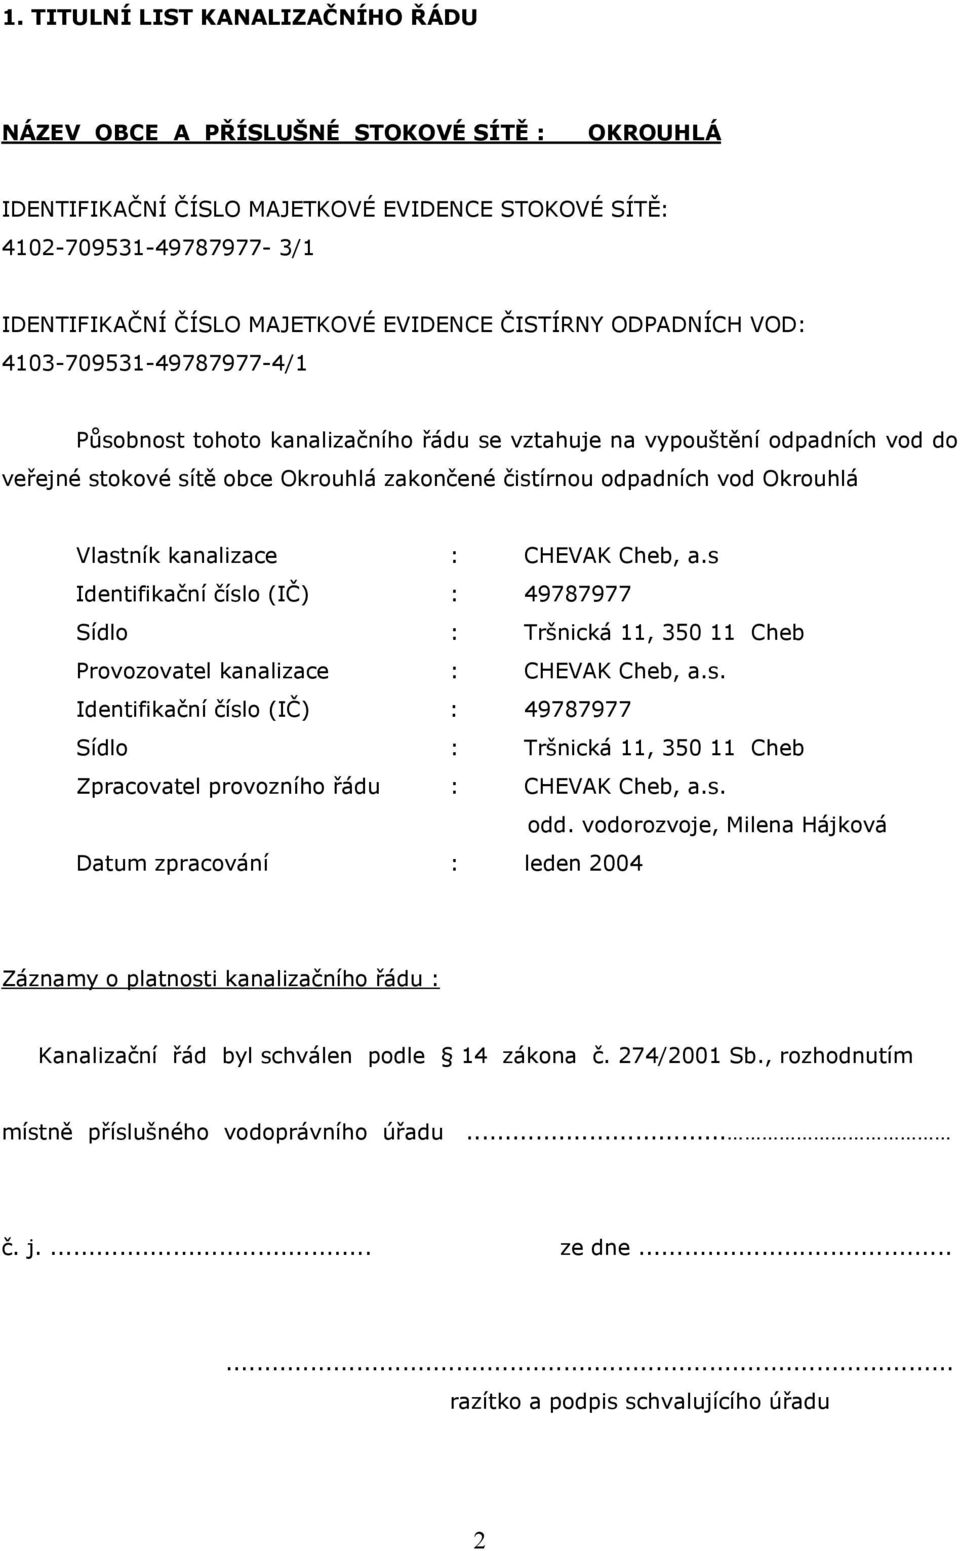 Okrouhlá Vlastník kanalizace : CHEVAK Cheb, a.s Identifikační číslo (IČ) : 49787977 Sídlo : Tršnická 11, 350 11 Cheb Provozovatel kanalizace : CHEVAK Cheb, a.s. Identifikační číslo (IČ) : 49787977 Sídlo : Tršnická 11, 350 11 Cheb Zpracovatel provozního řádu : CHEVAK Cheb, a.